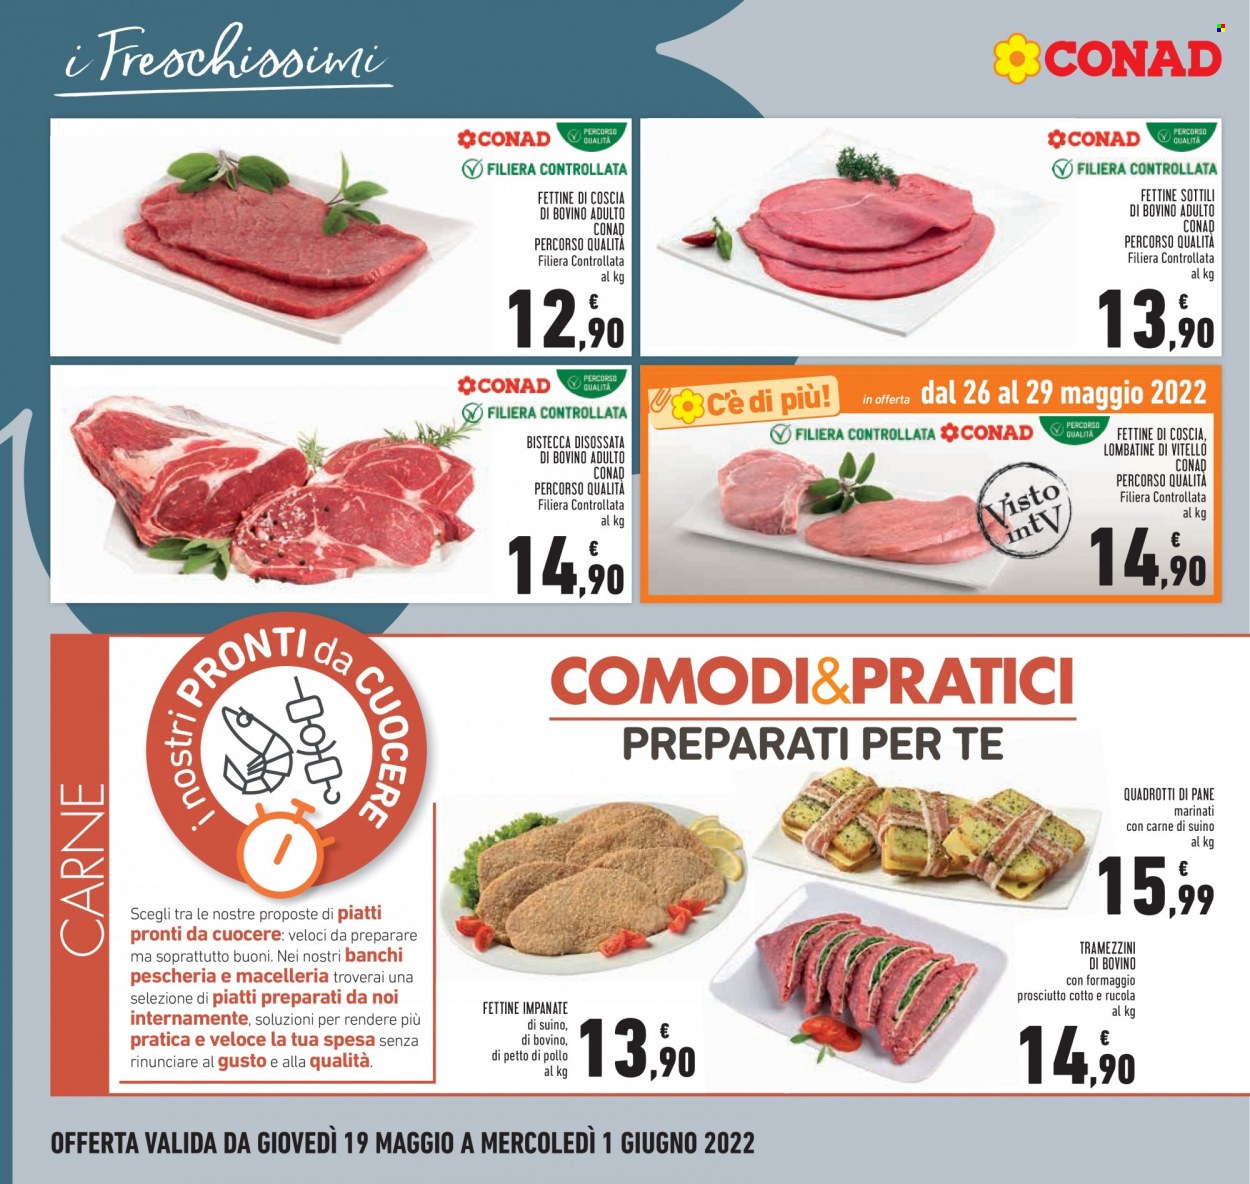 thumbnail - Volantino Conad - 19/5/2022 - 1/6/2022 - Prodotti in offerta - pane, bistecca, manzo, vitello, lombata di vitello, suino, tramezzino, quadrotti. Pagina 8.